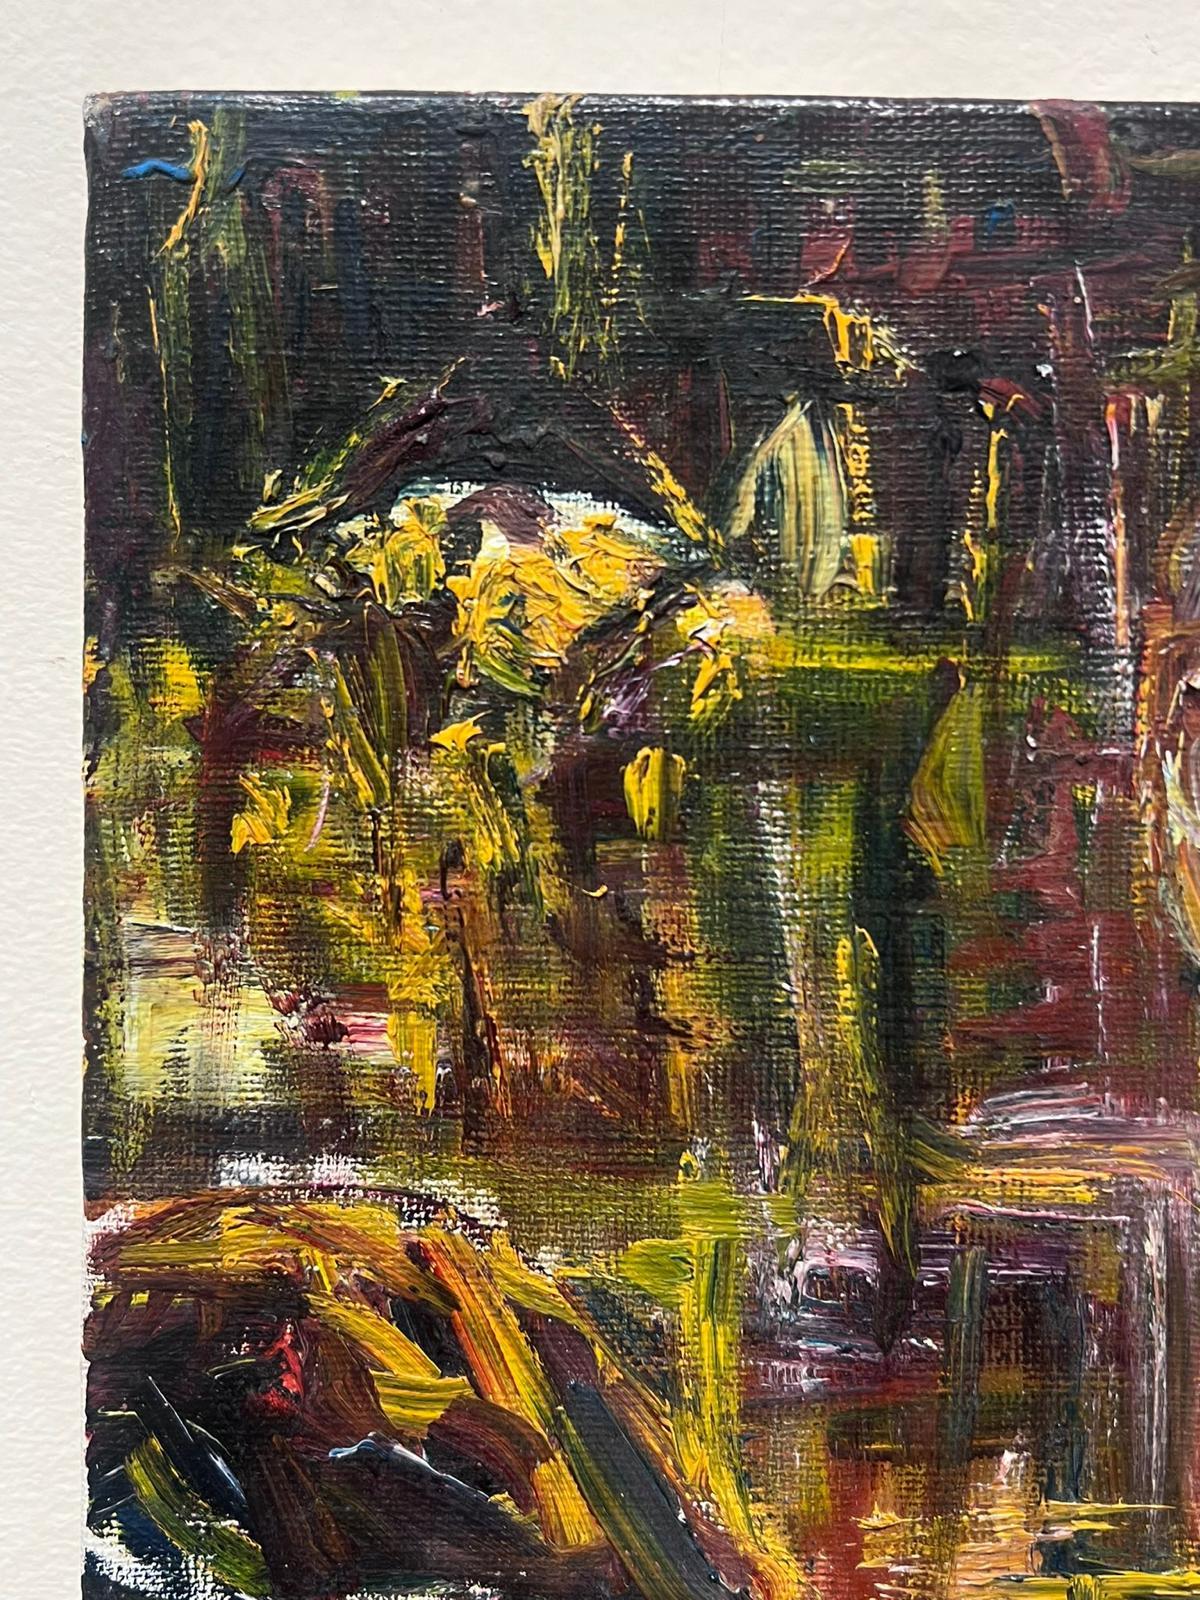 Abstrakt-expressionistische Komposition
von Jacques COULAIS (1955-2011)
signiertes Ölgemälde auf Leinwand
ungerahmt: 9,5 x 7,5 Zoll
Zustand: ausgezeichnet
Provenienz: Alle Gemälde, die wir von diesem Künstler zum Verkauf anbieten, stammen aus dem